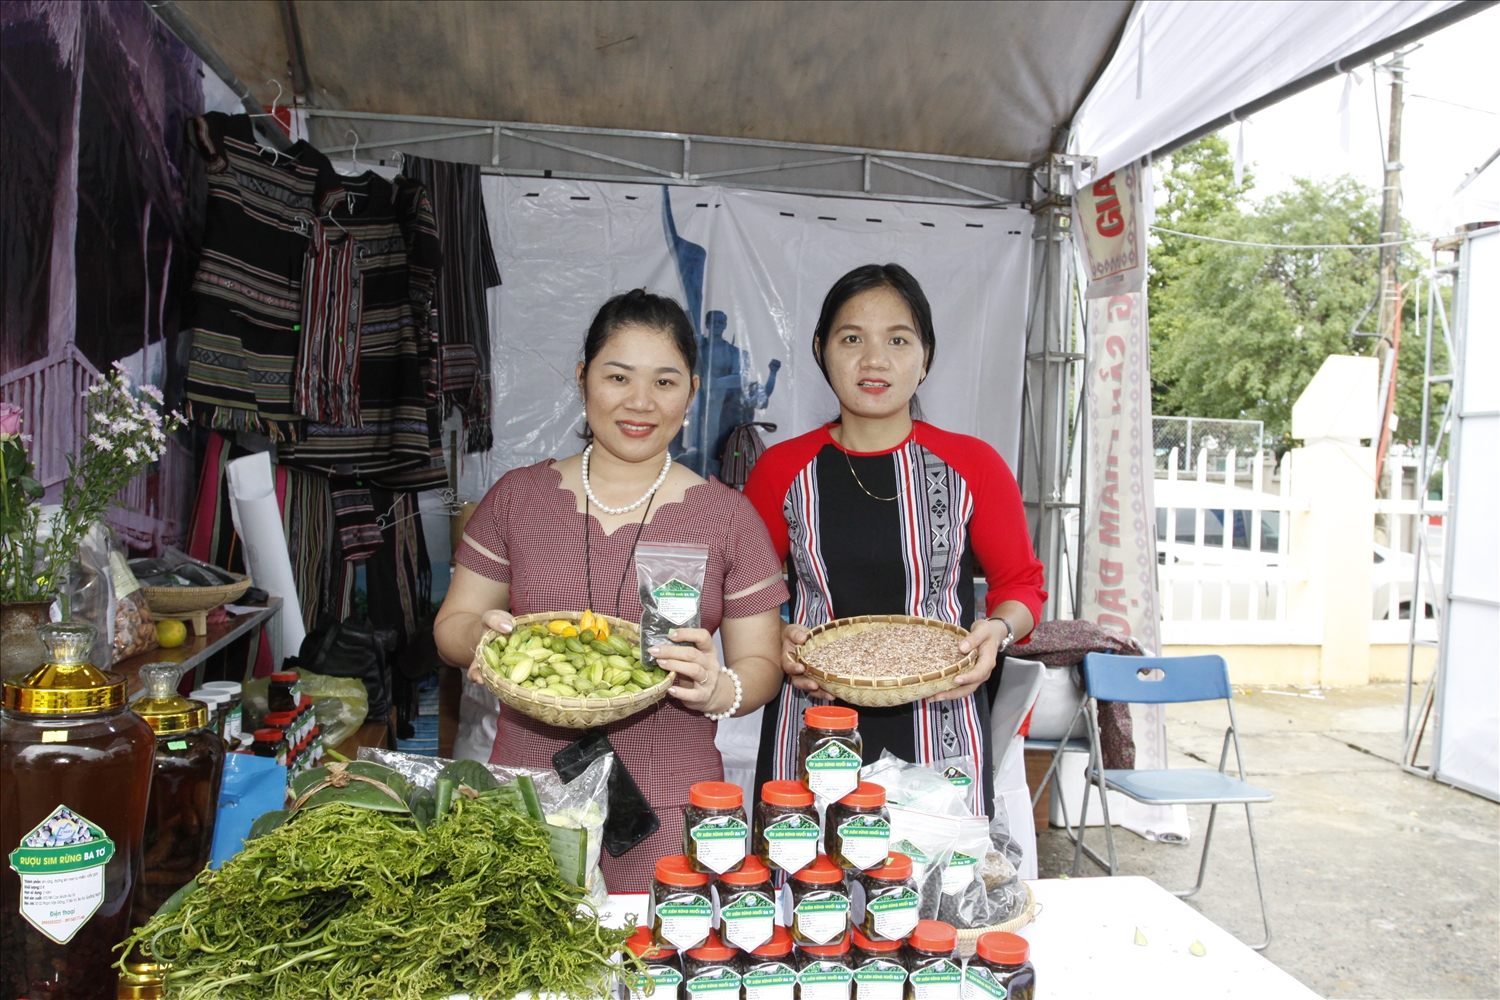 Miền núi Quảng Ngãi với nhiều sản phẩm địa phương giúp các bạn trẻ khởi nghiệp